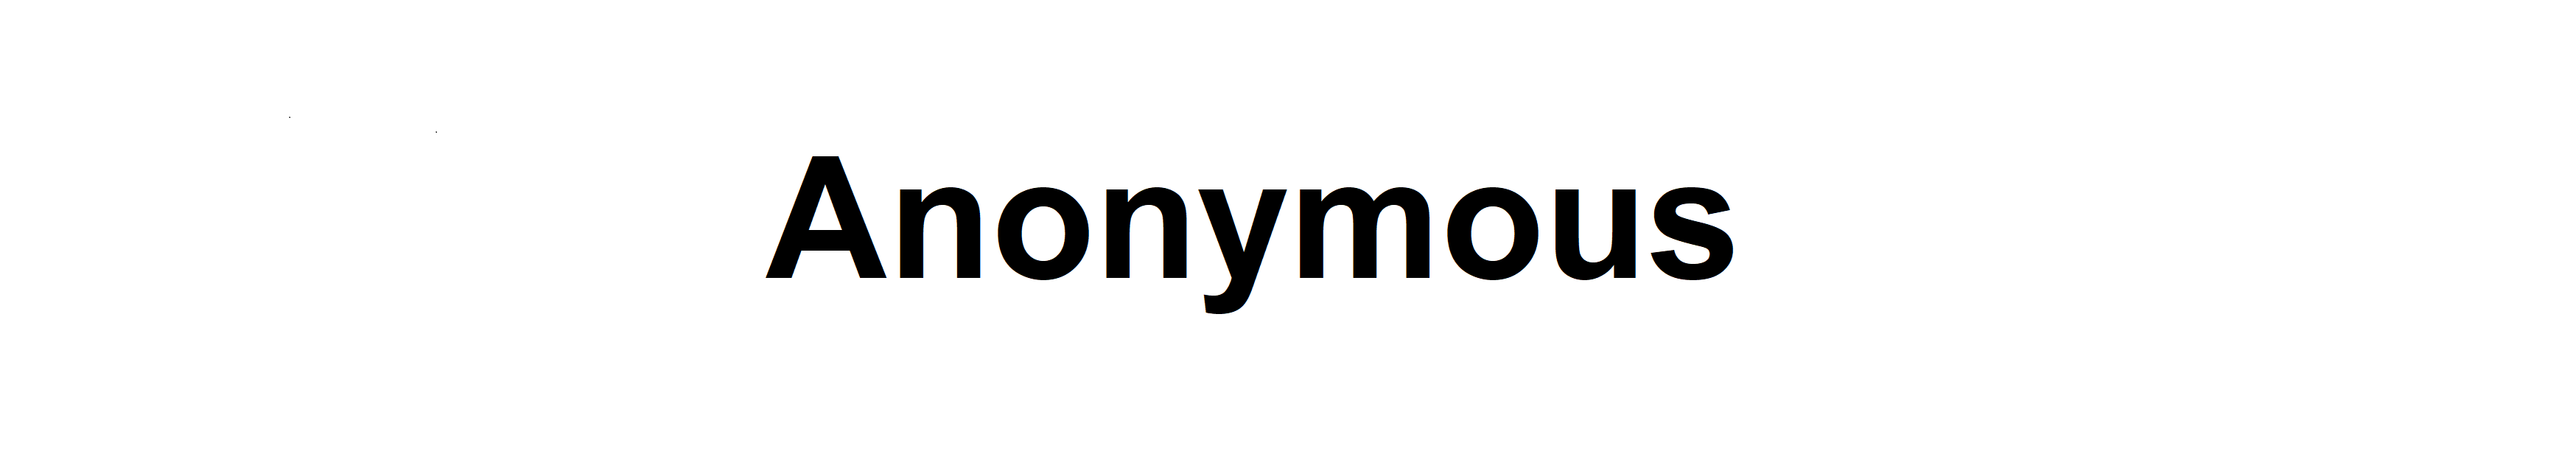 Anonymomus